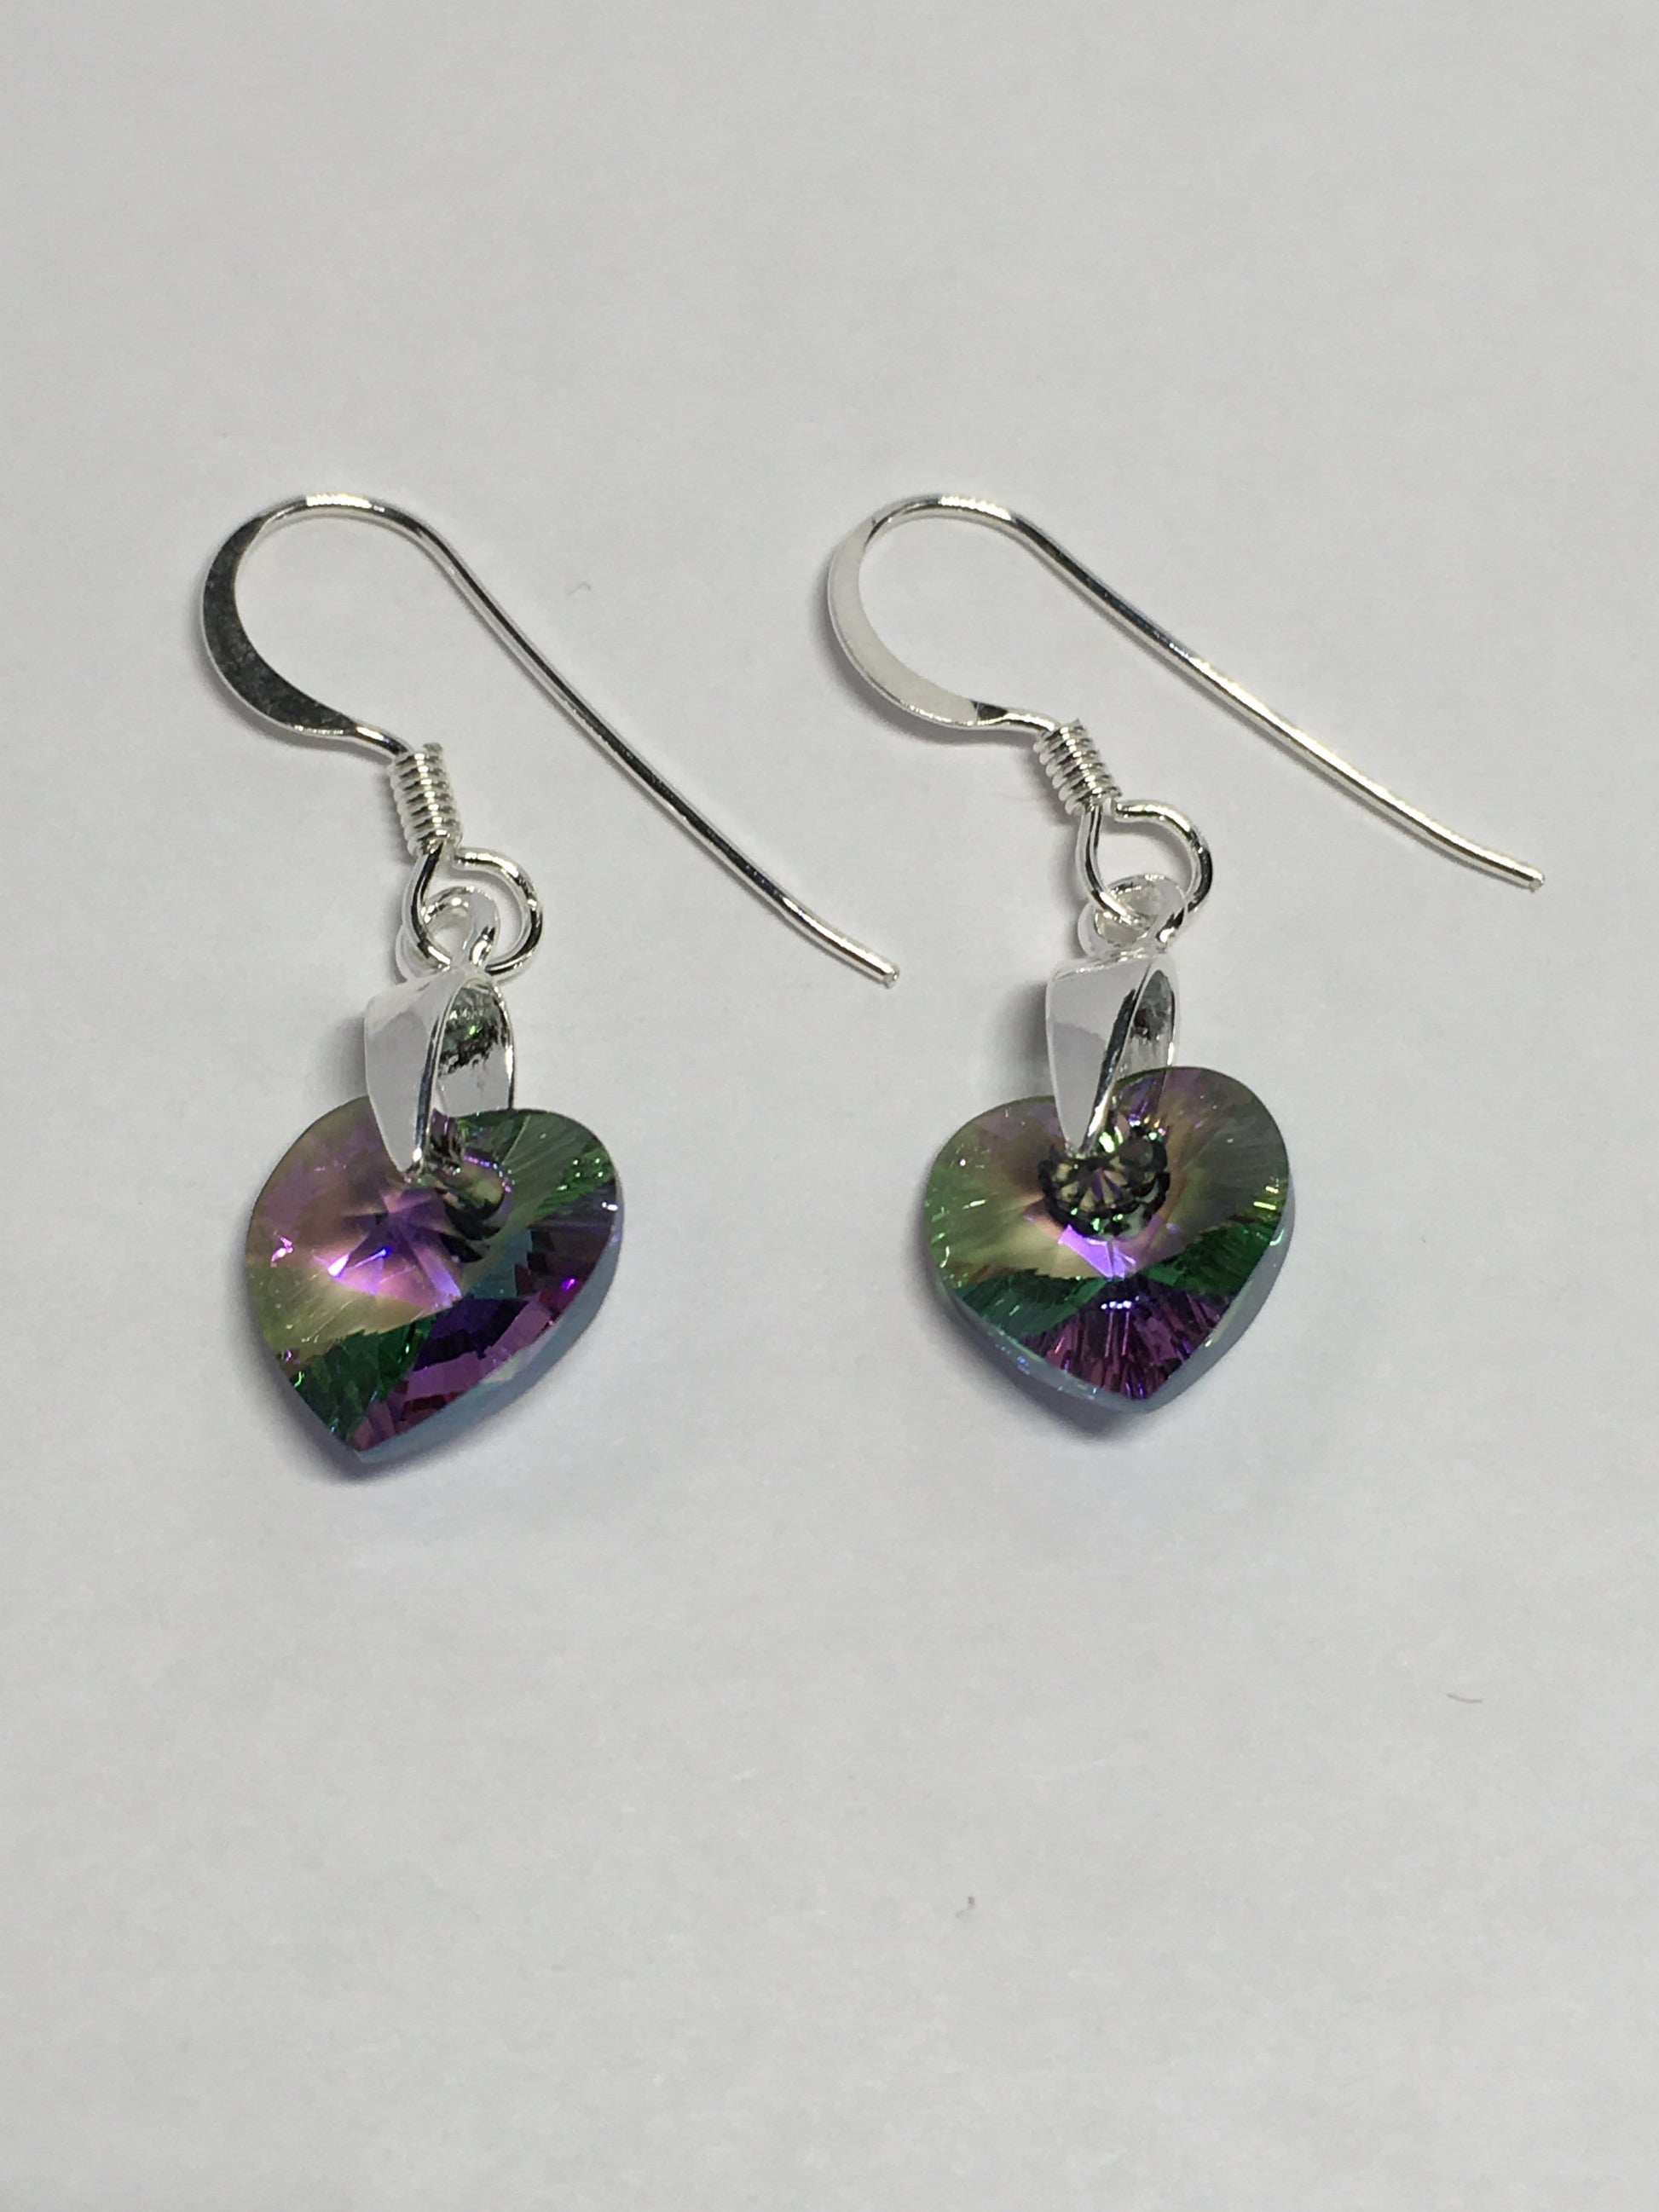 Earrings Sterling Silver Crystal Heart Earrings Jewelz Galore Sterling Silver Crystal Heart Earrings | Jewelz Galore | Jewellery 